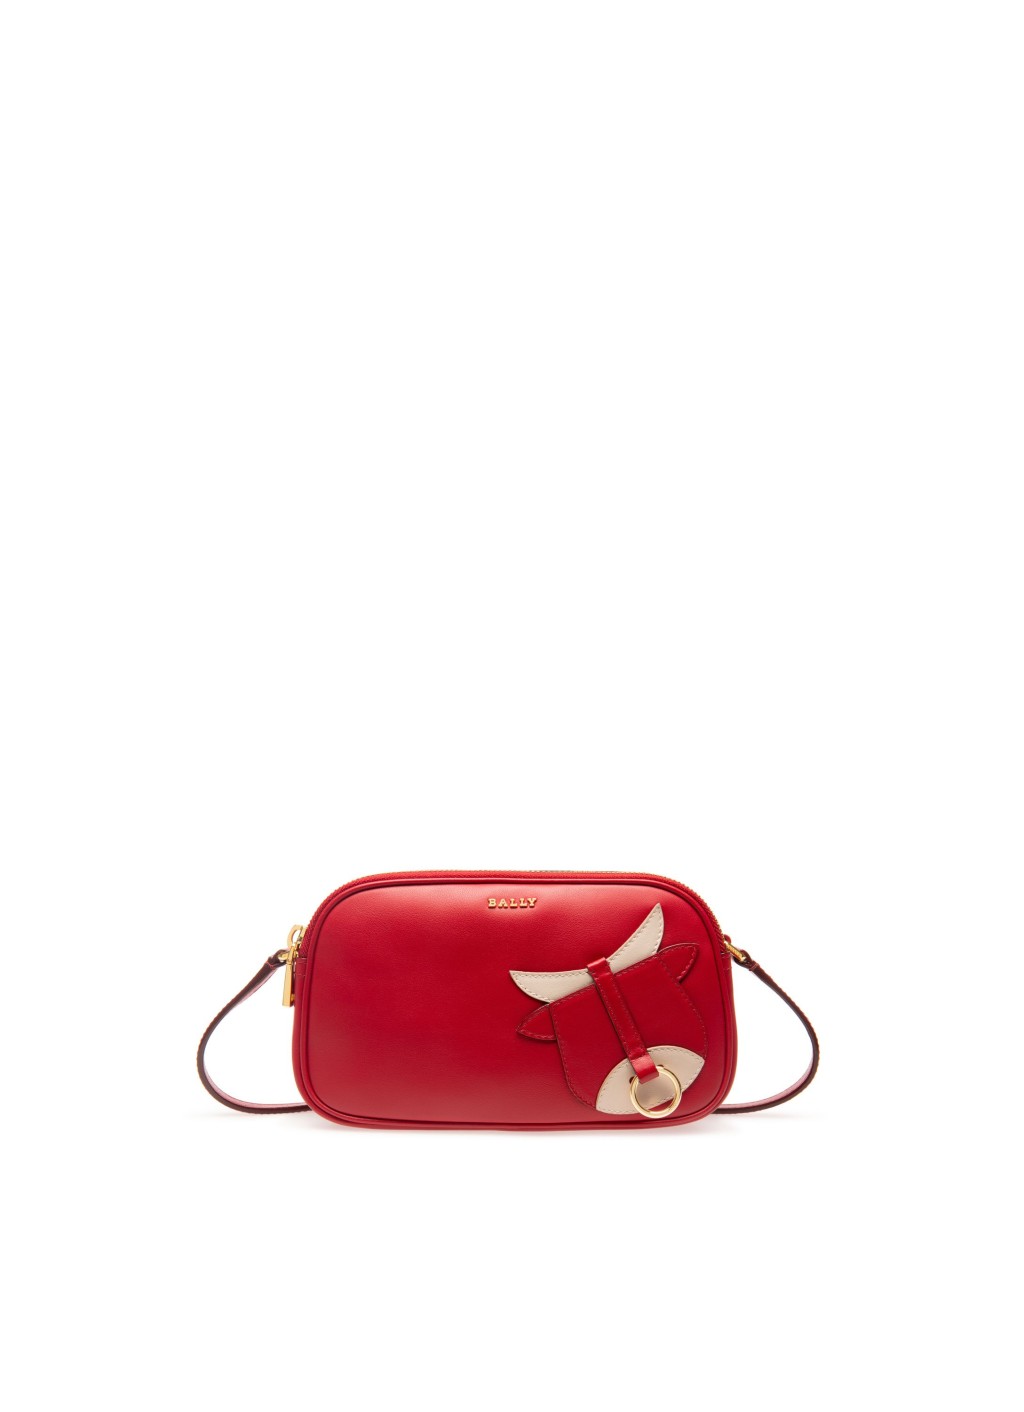 Bally新春胶囊系列中的小手袋/$3,990，以红色公牛为灵感，上面还饰有金色鼻环，设计精致